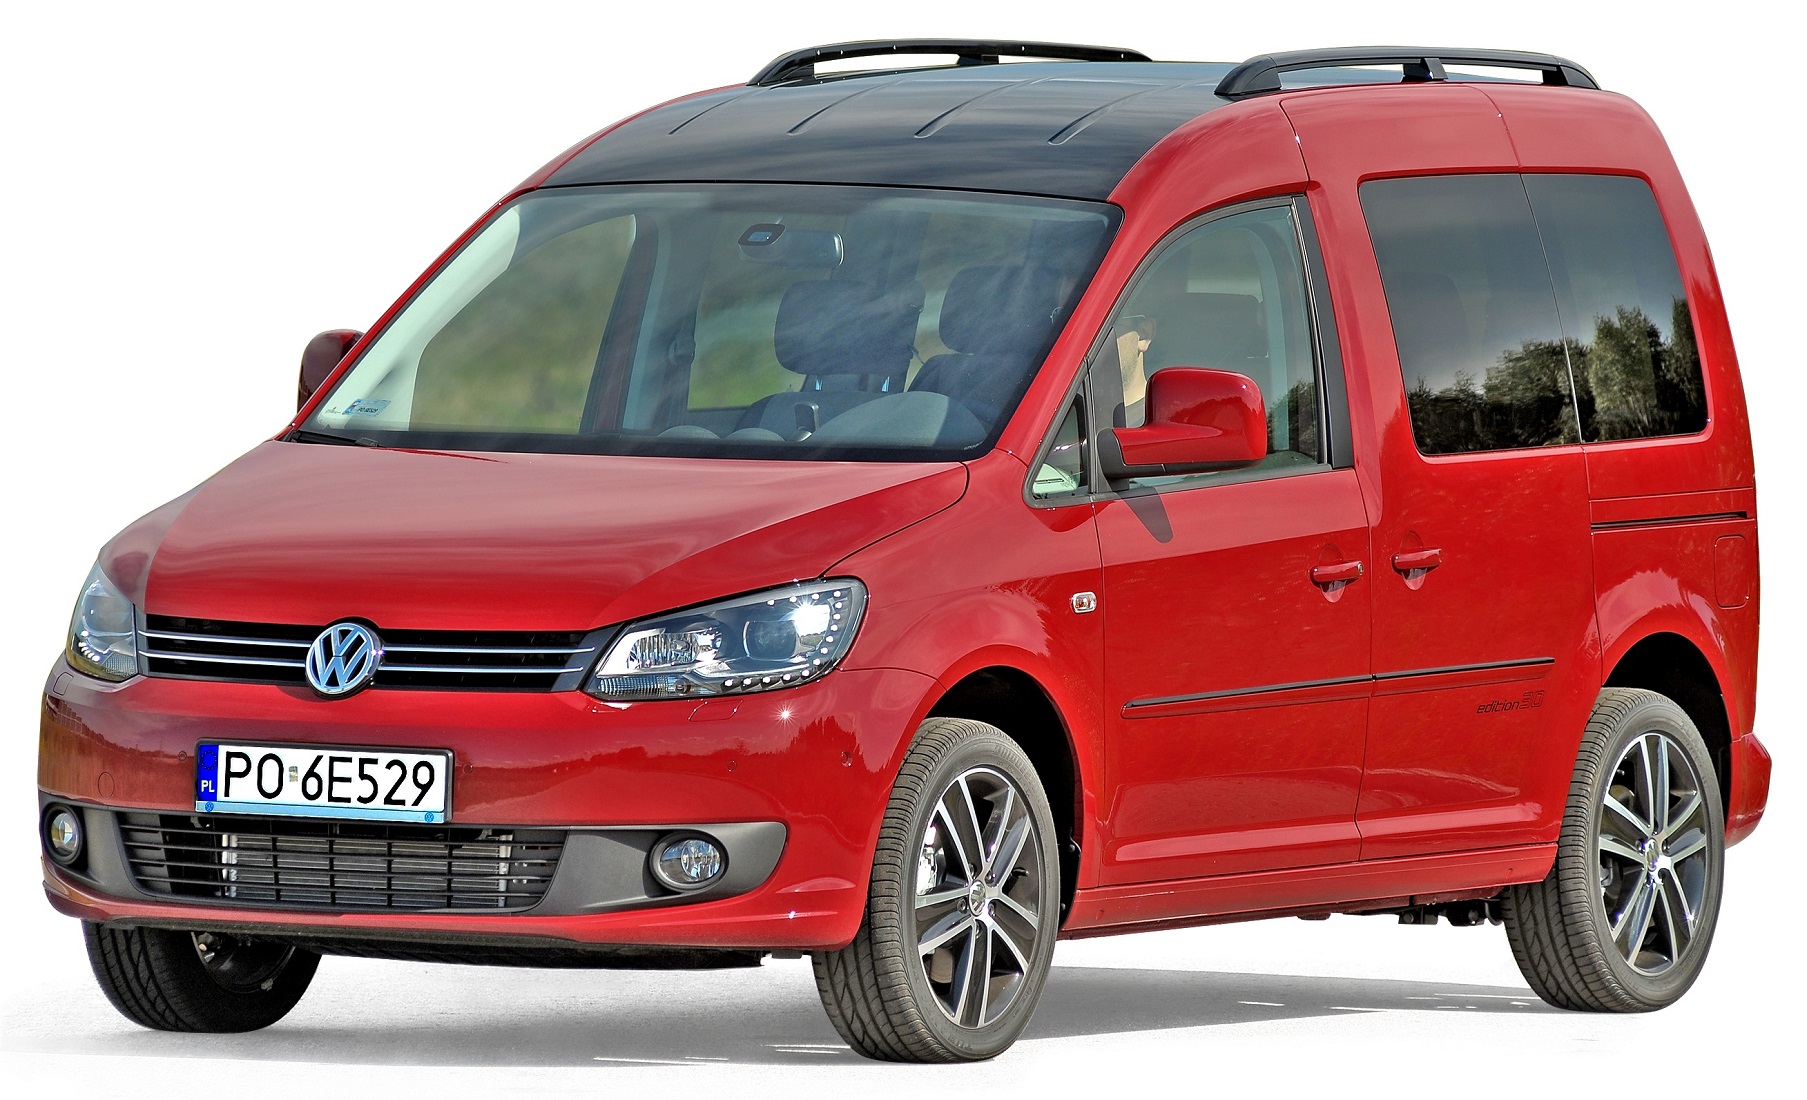 Renault Scenic III - Tani, praktyczny, kompaktowy van